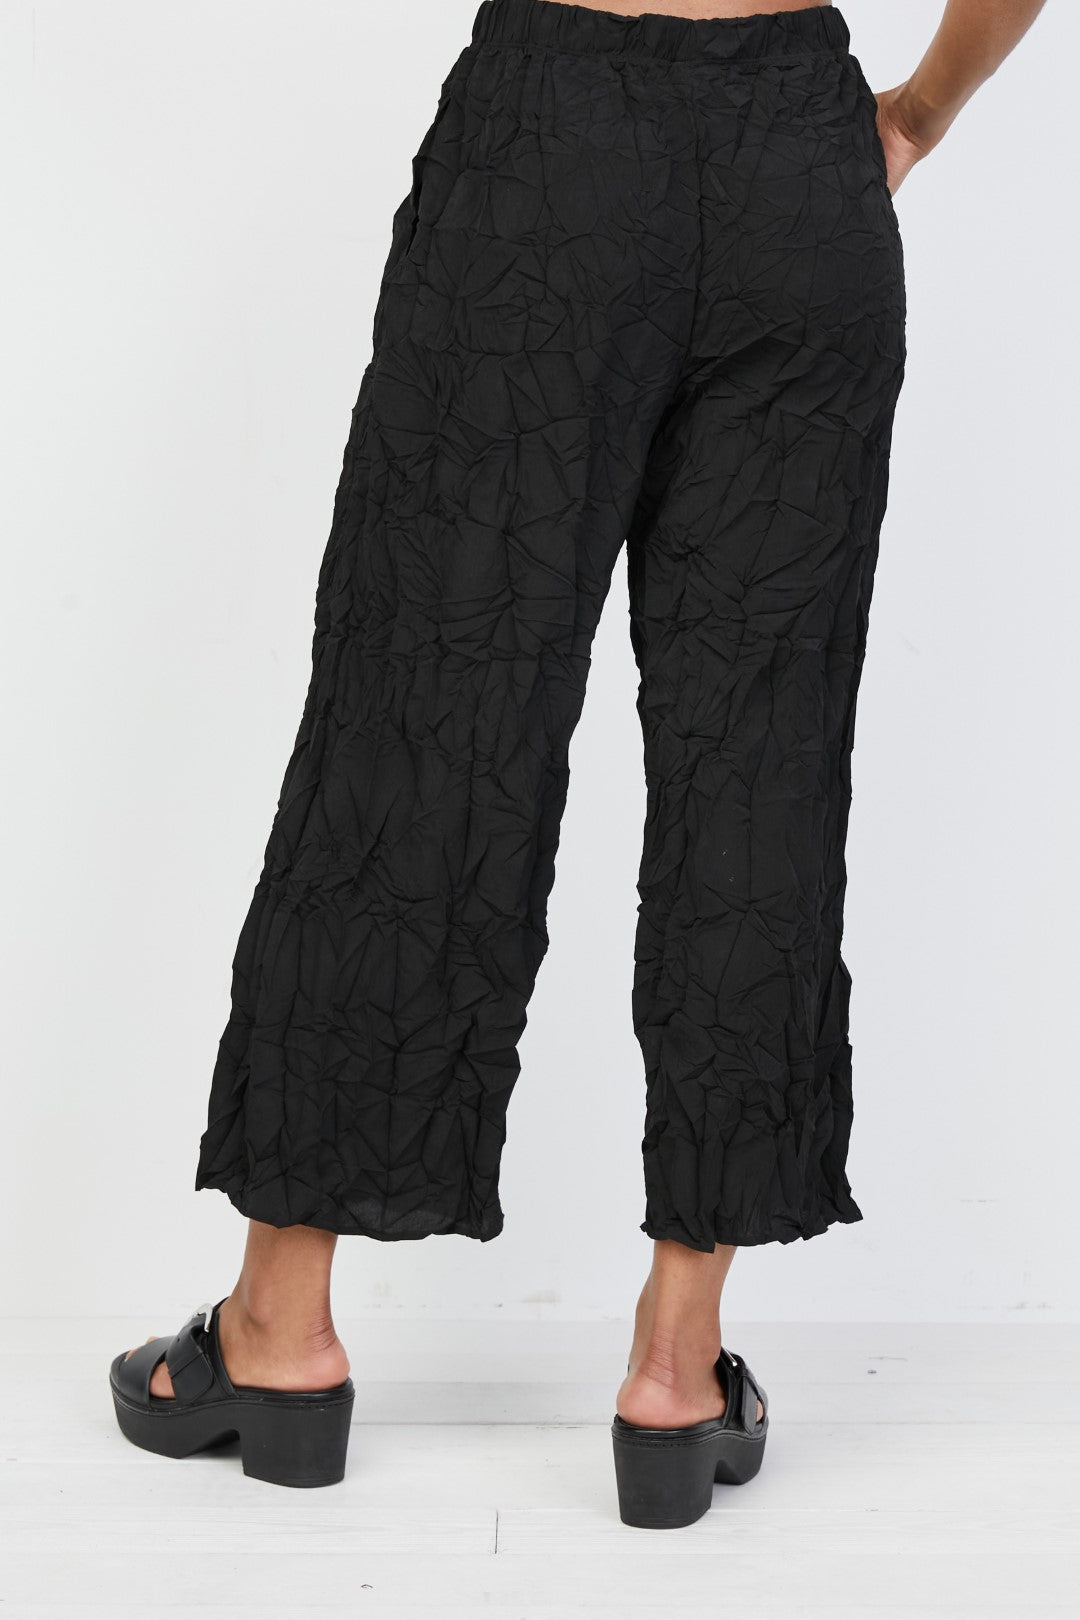 Black Crinkled Crop Pant